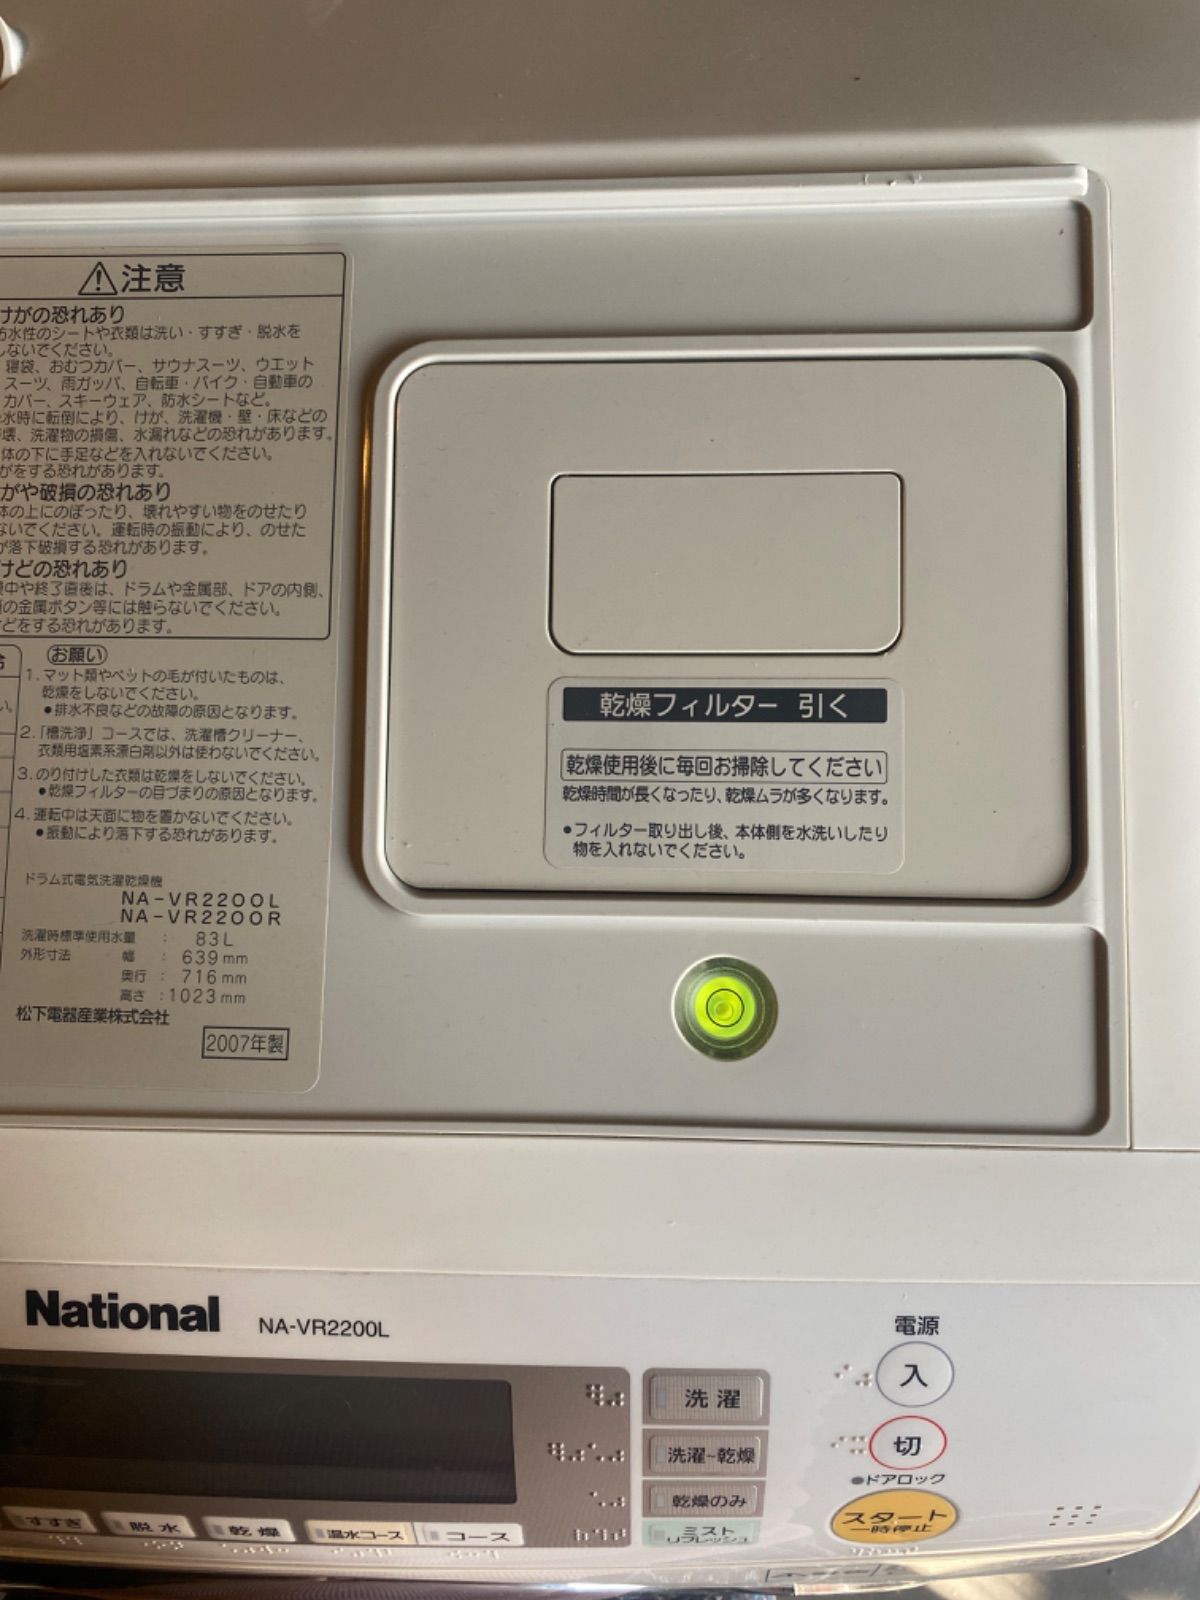 National ナショナル 2008年製 ドラム式洗濯機 NA-VR2200L 【お値下げ 